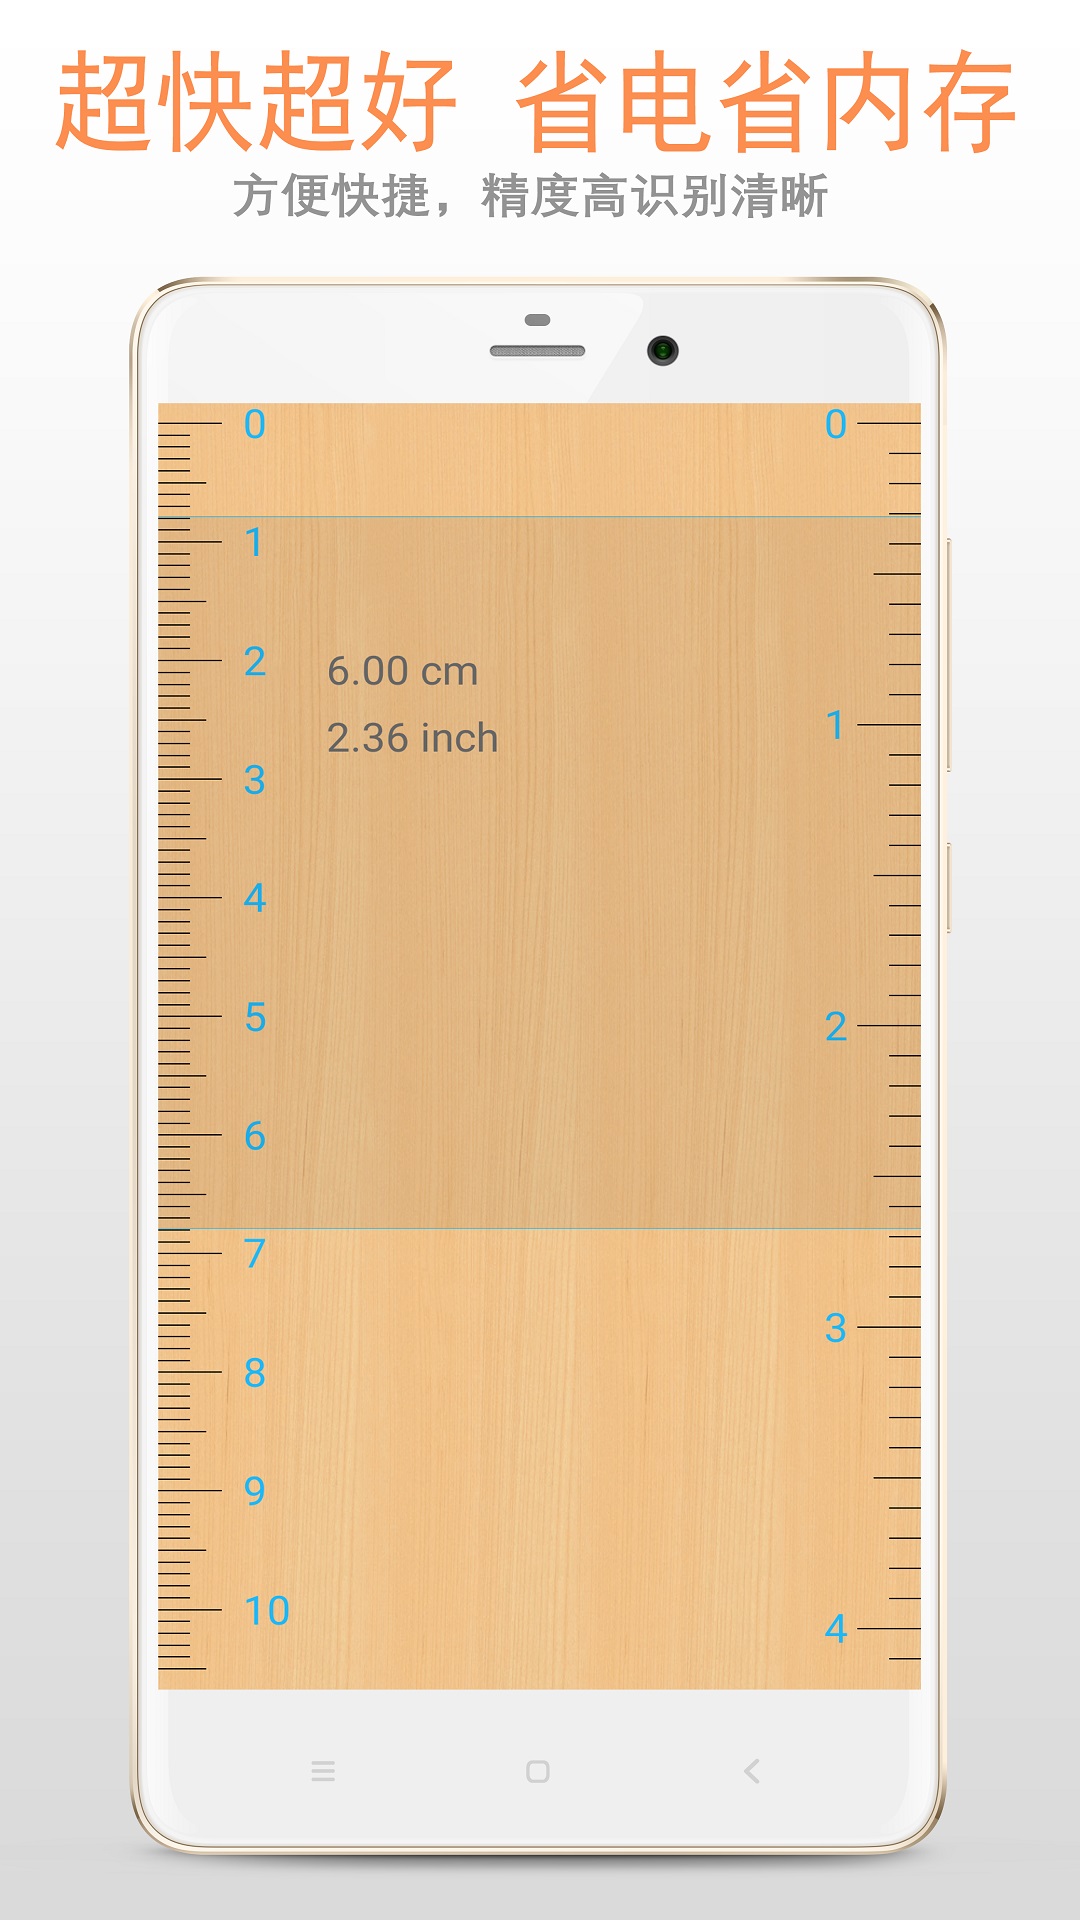 尺子在線測量11手機超級尺子在線測量官方版v332302